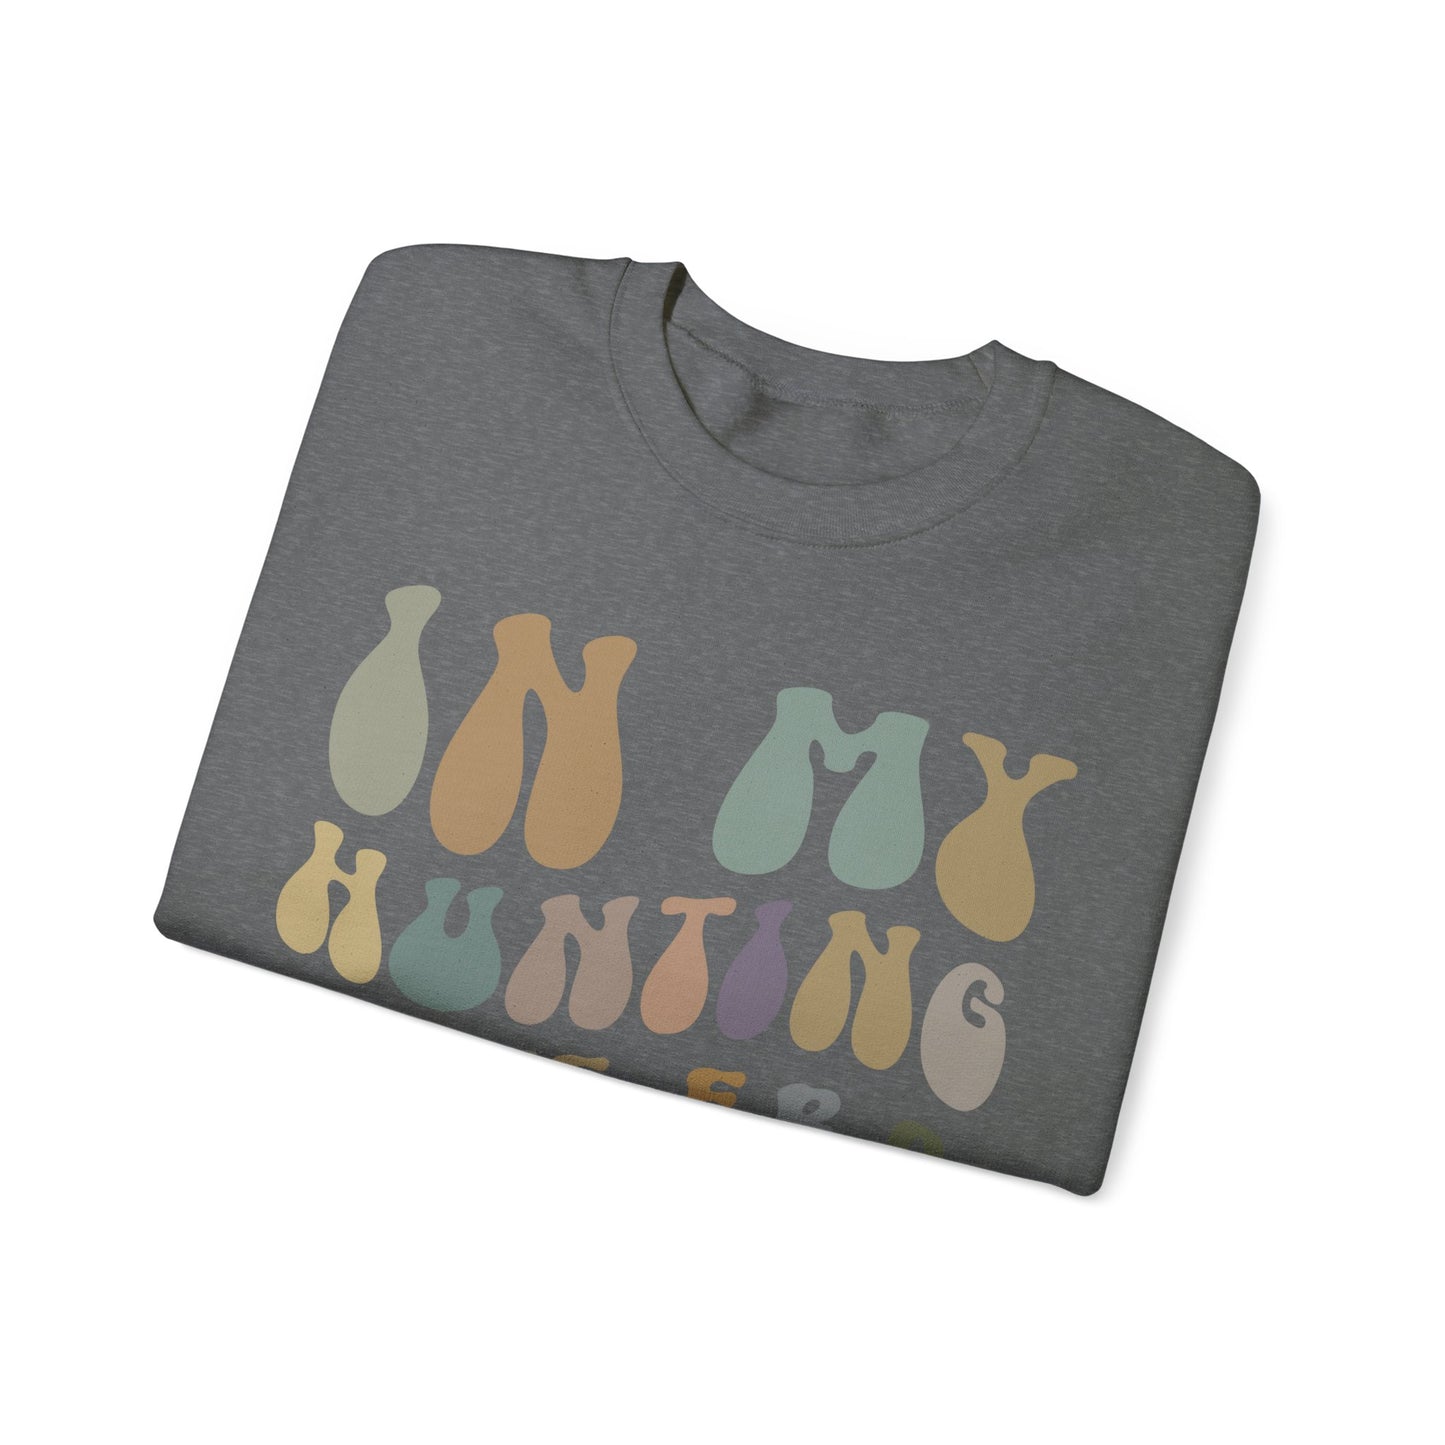 In My Hunting Wife Era Sweatshirt, Hunter Wife Sweatshirt, Gift for Wife from Husband, Hunting Wife Sweatshirt, Hunting Season Shirt, S1319